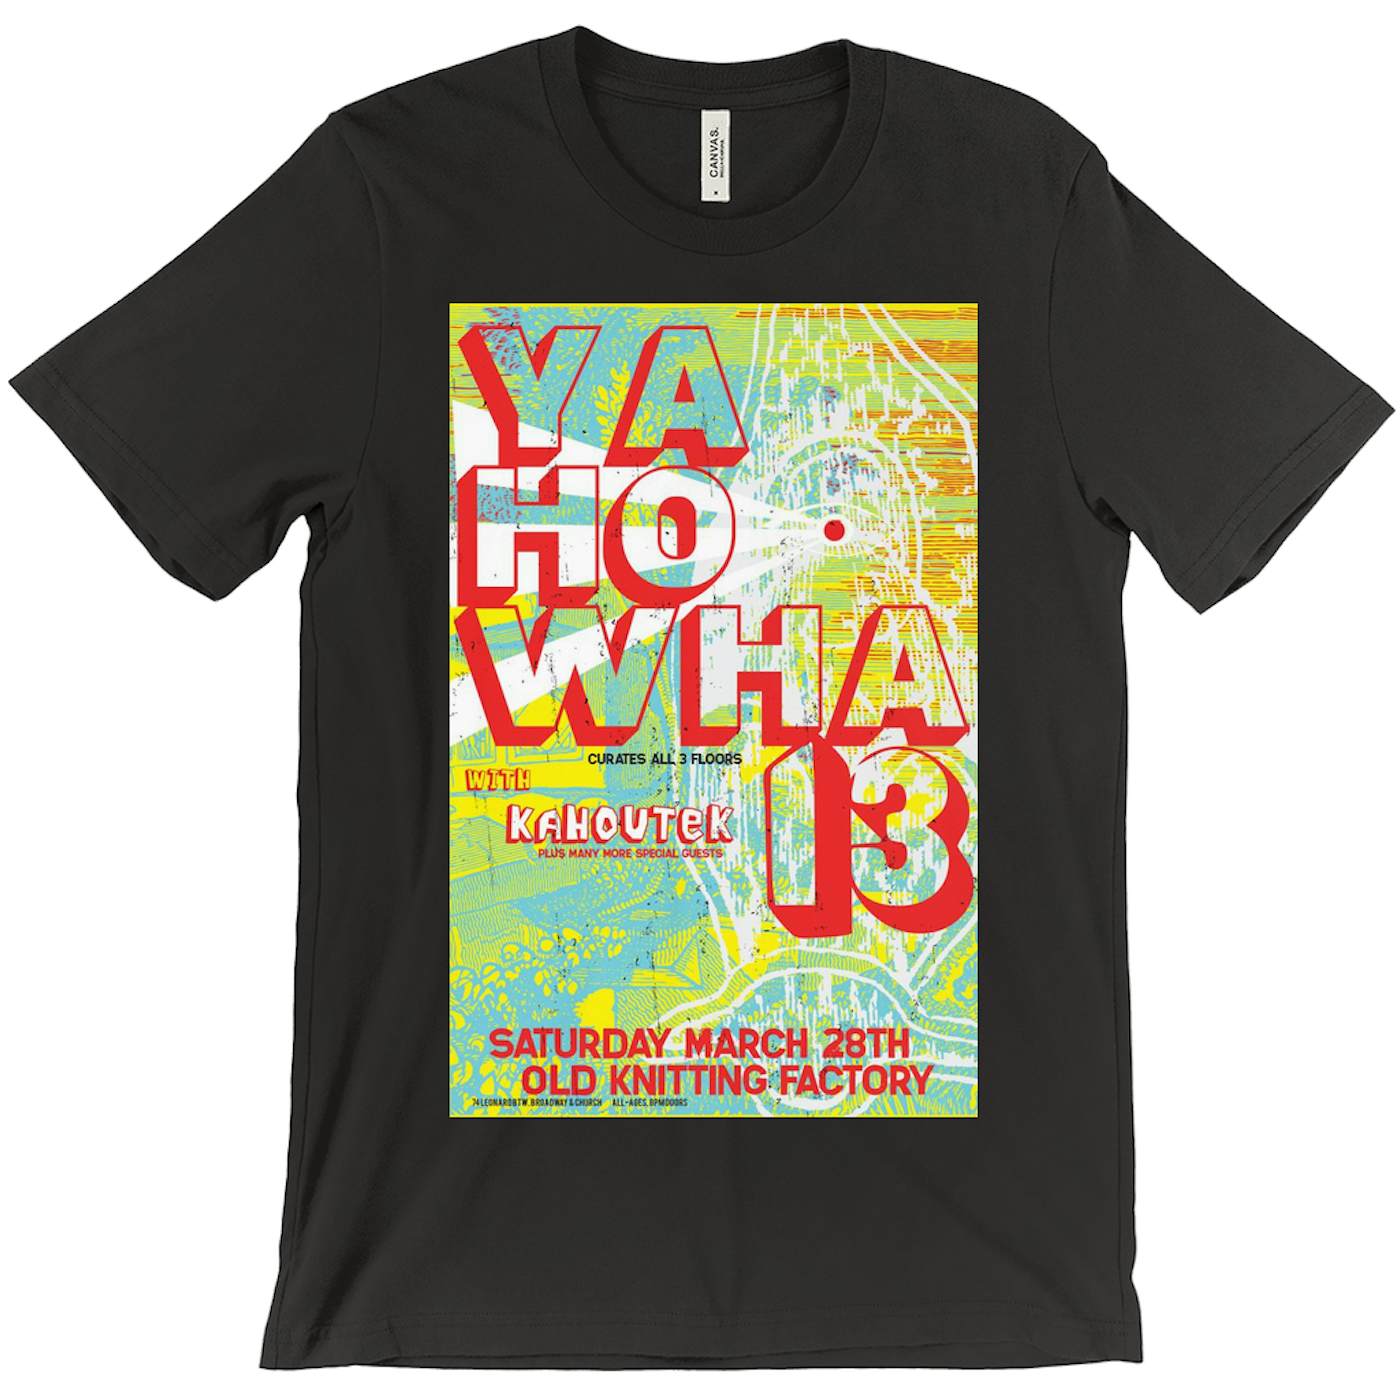 Yahowha 13 at Knitting Factory T-Shirt